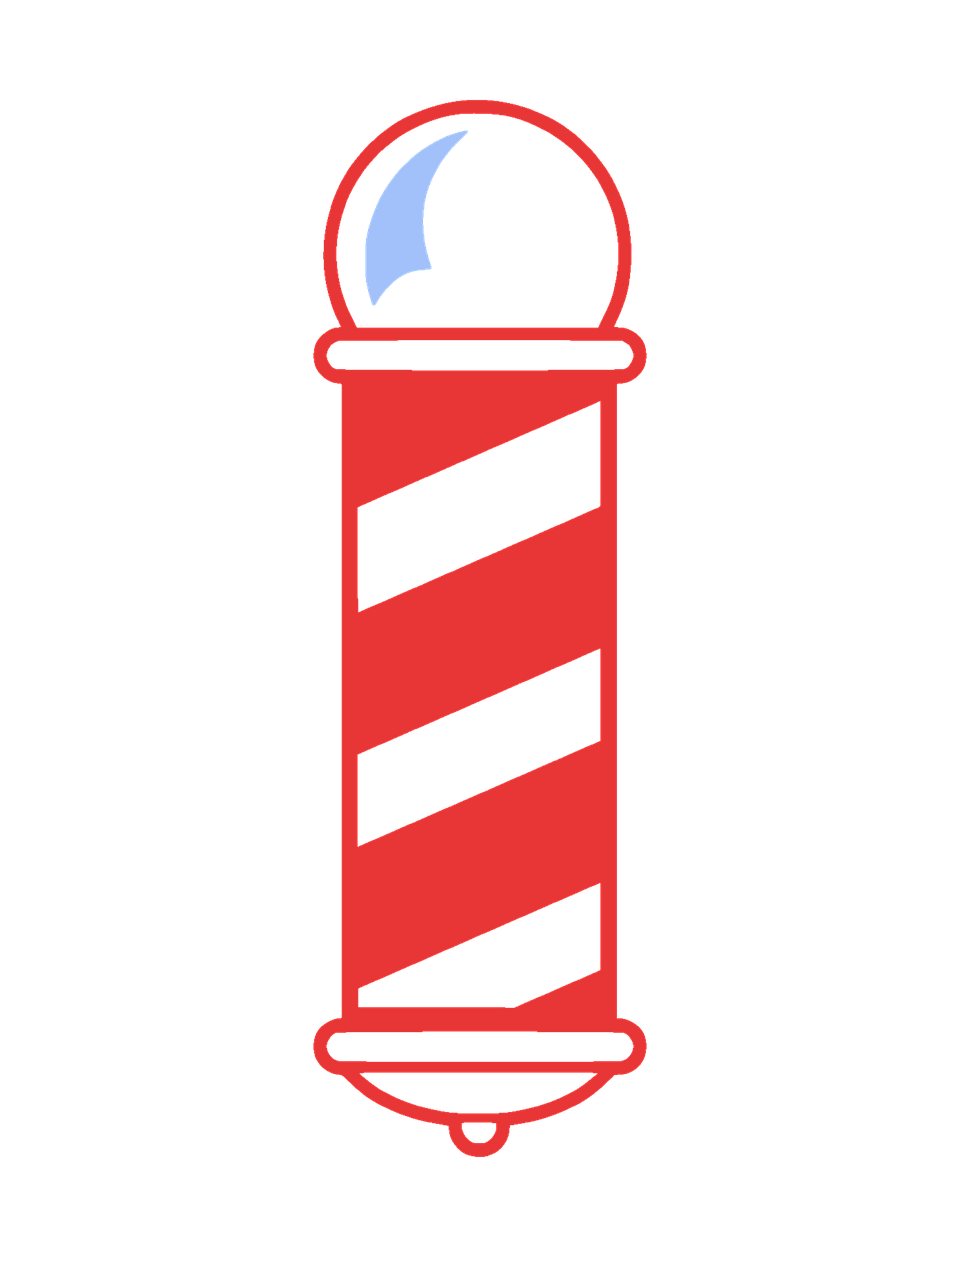 Barber Pole Sign PNG Images